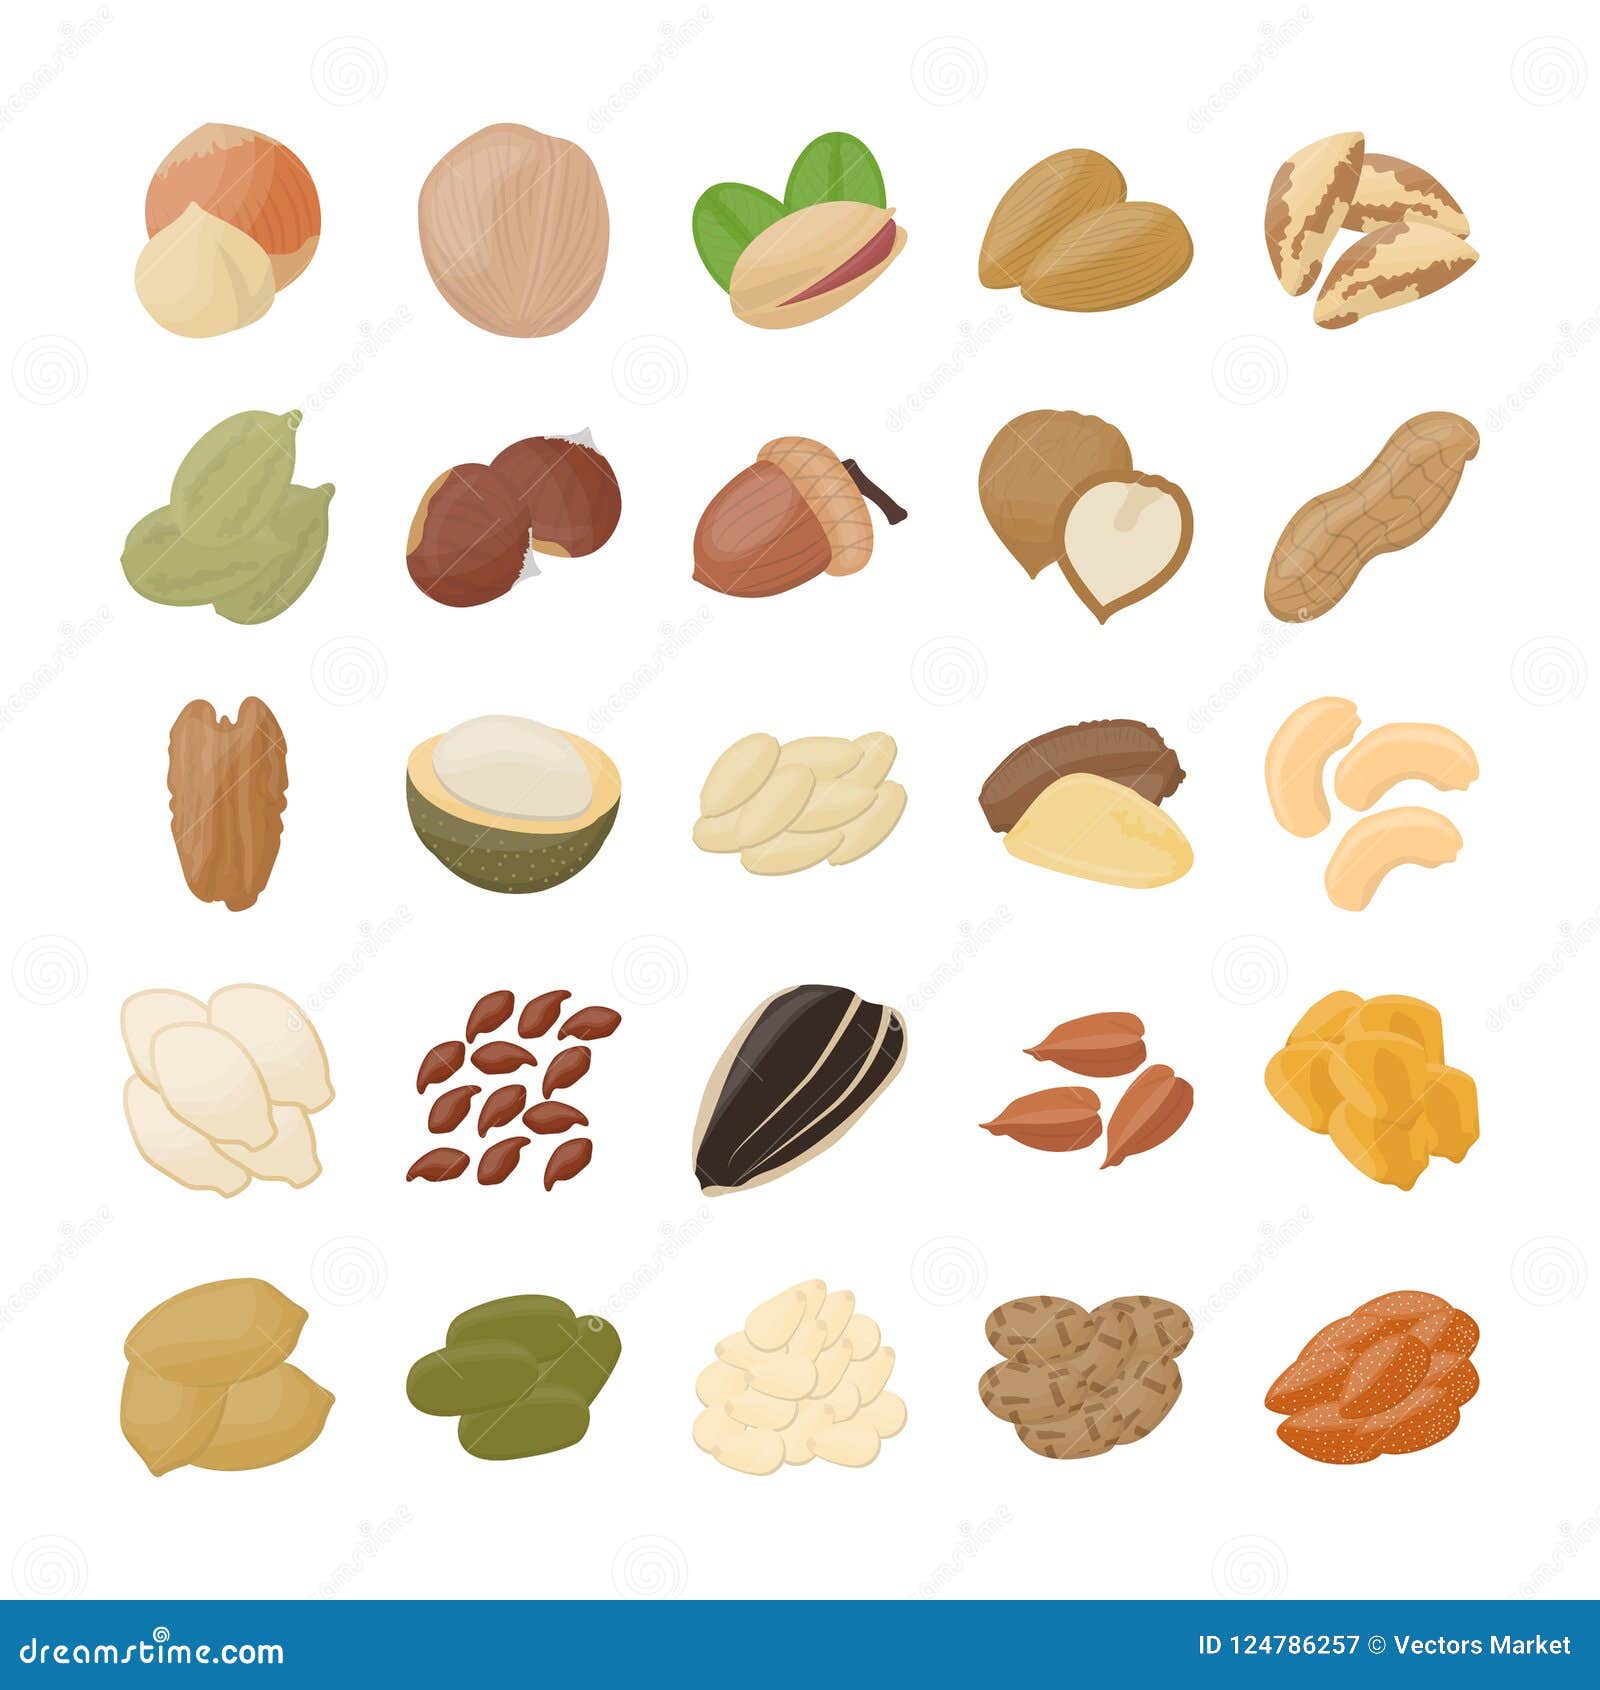 Tree nut fruit seeds